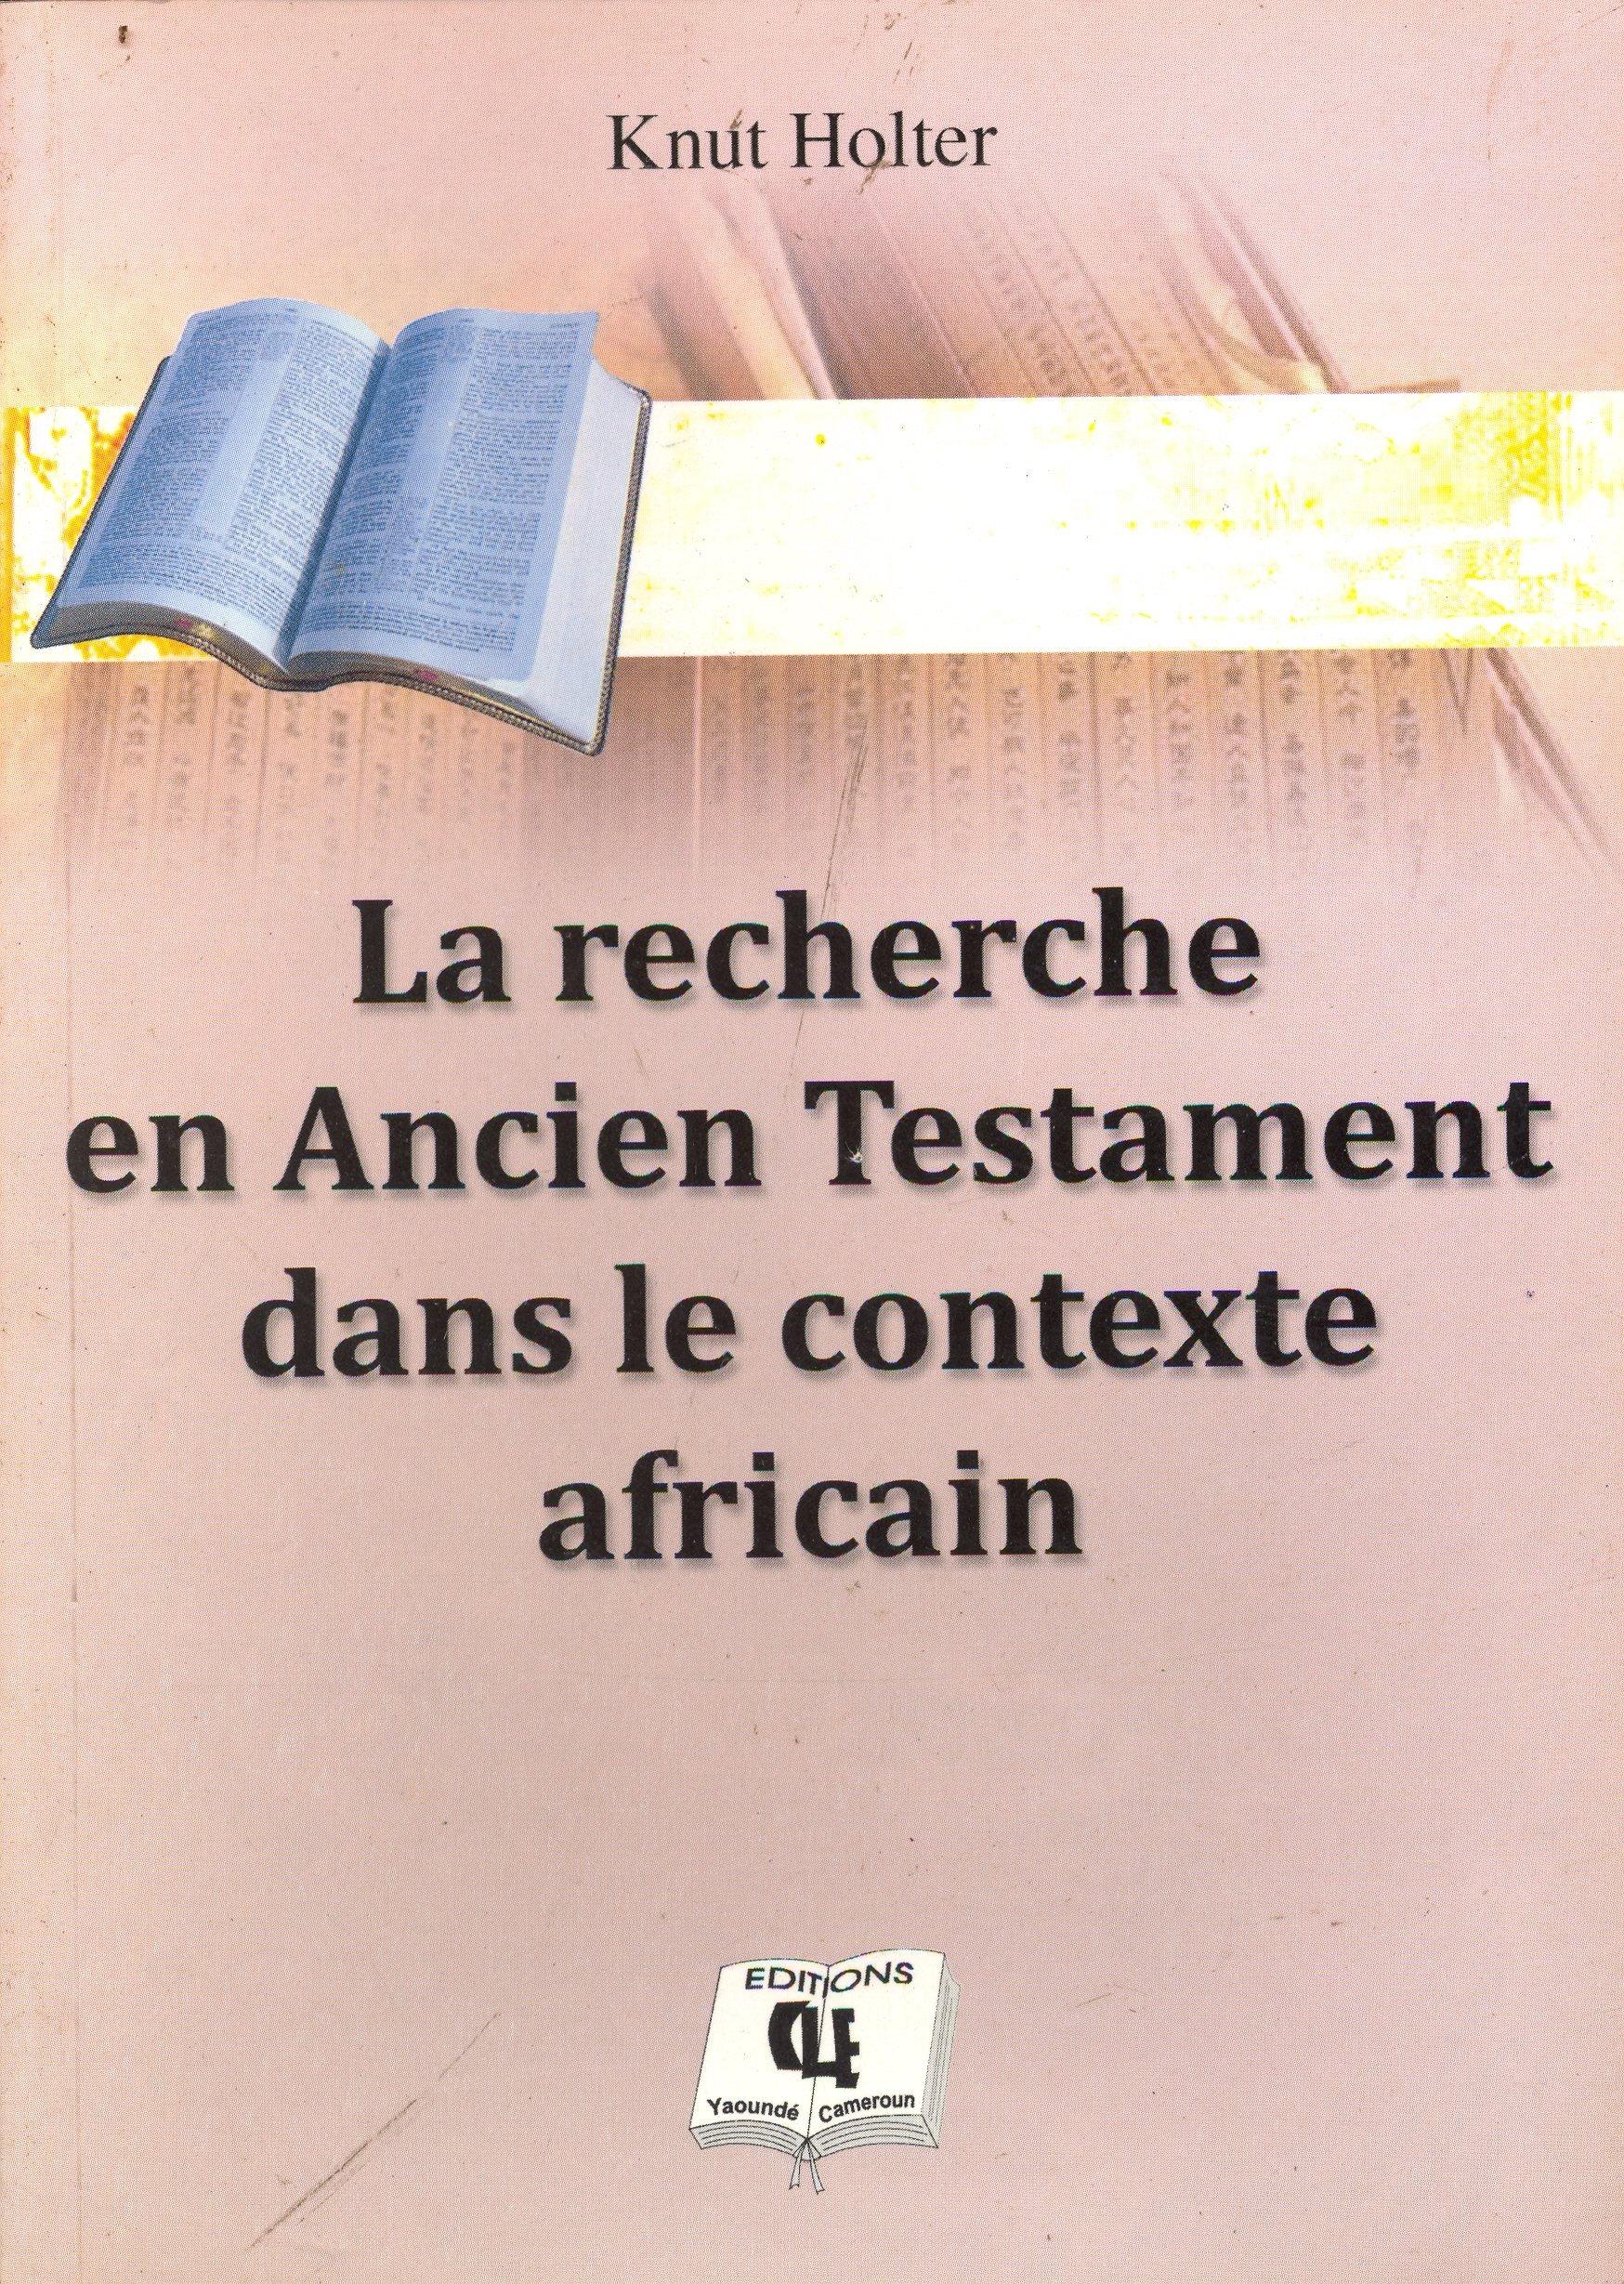 La recherche en Ancien Testament dans le contexte africain